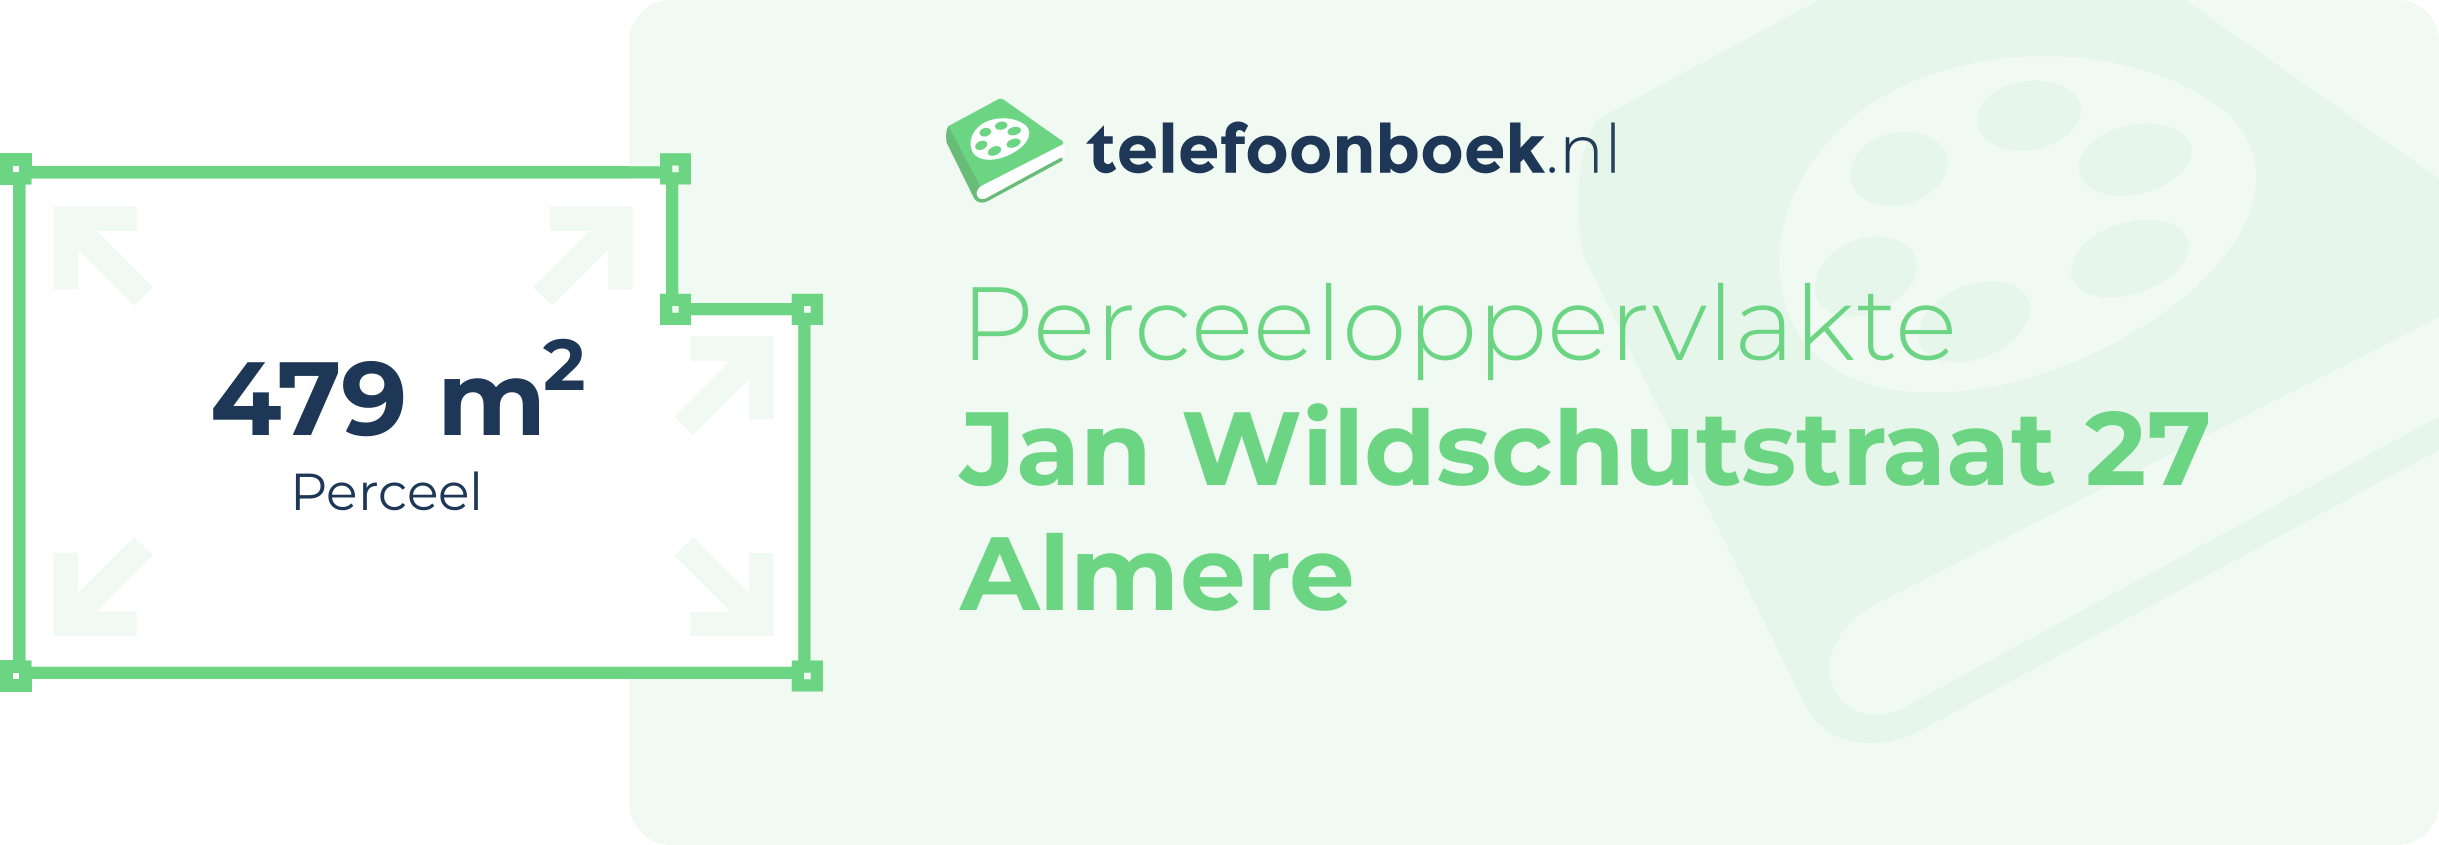 Perceeloppervlakte Jan Wildschutstraat 27 Almere